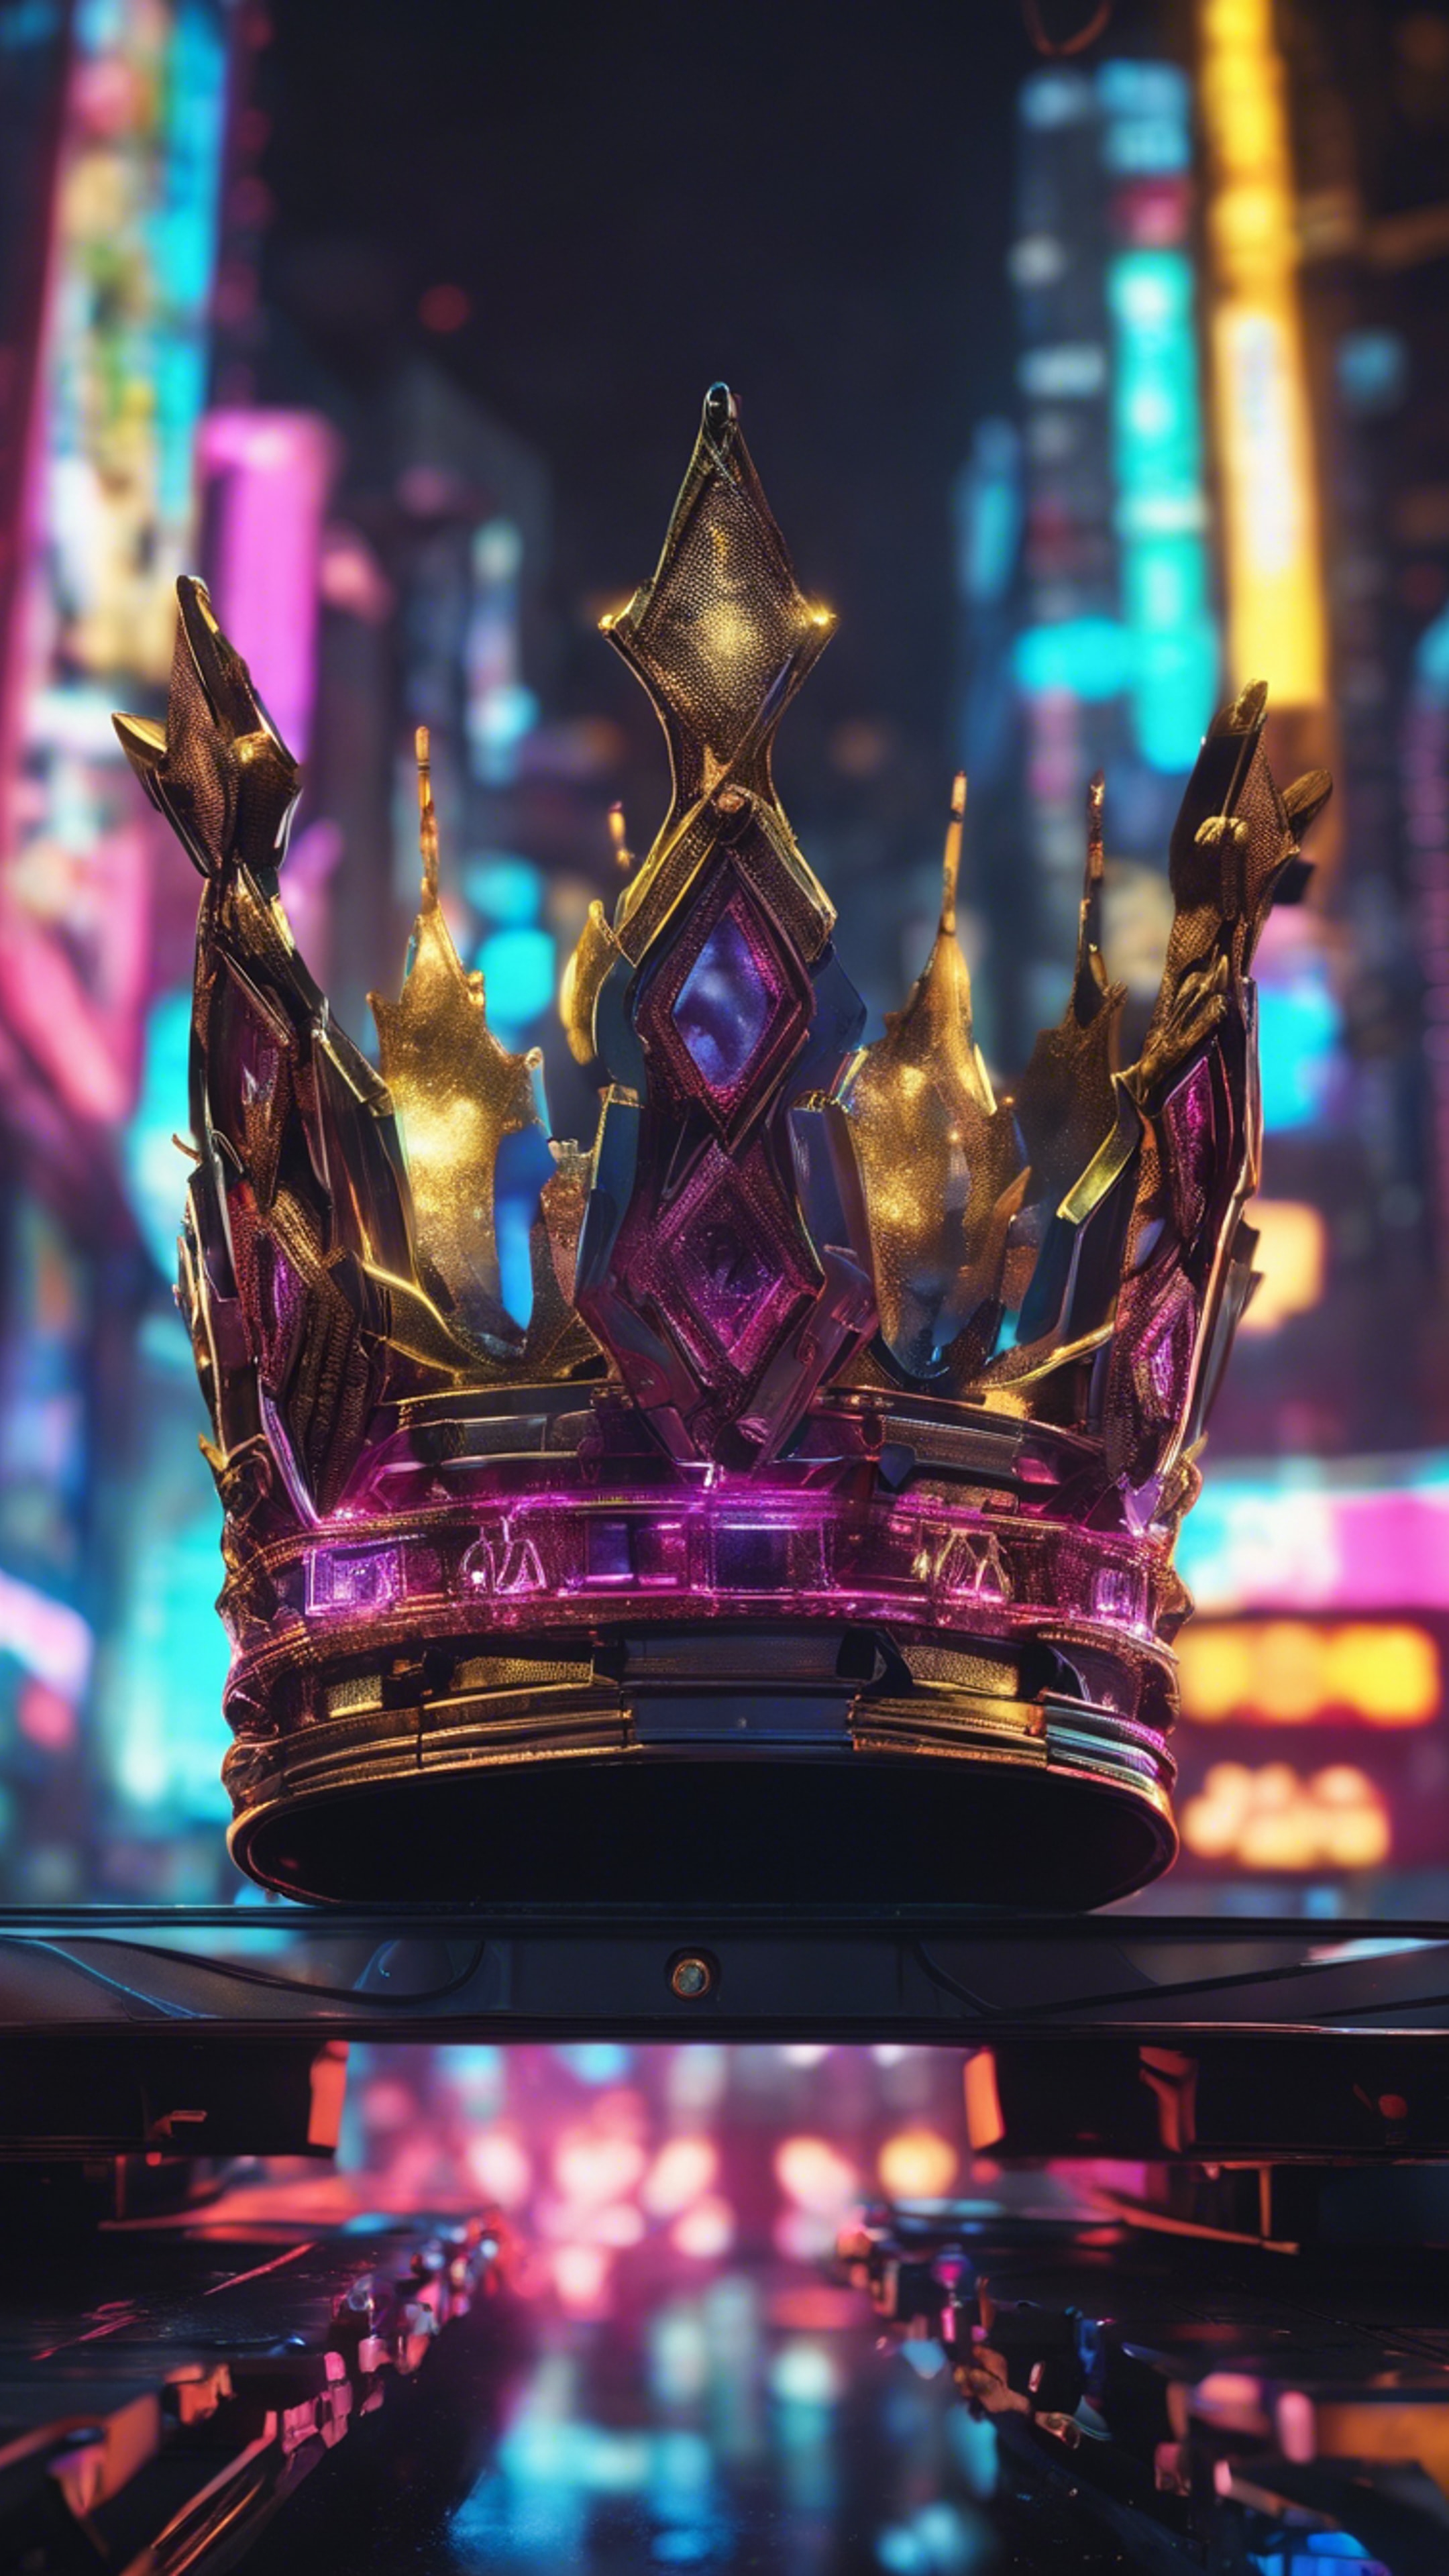 A digital crown design with neon lights against a dark cyberpunk cityscape. Hintergrund[835c9044d42248569b66]